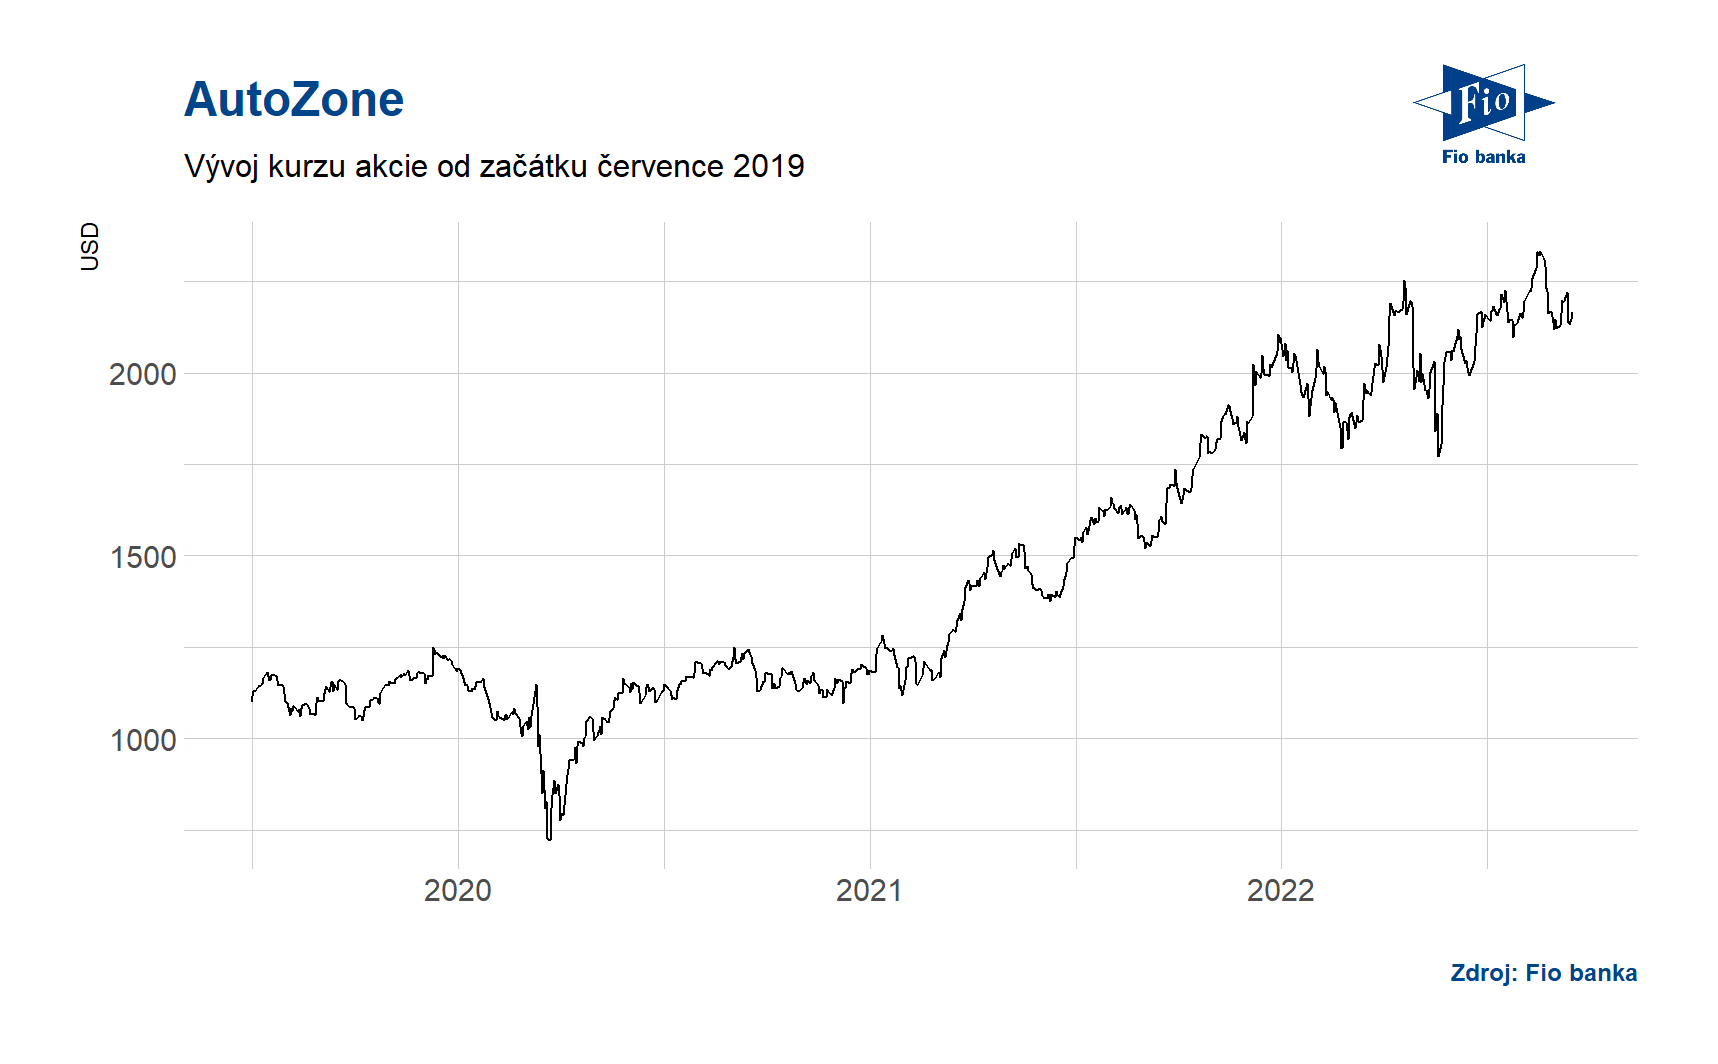 Vývoj ceny akcie AutoZone. Zdroj: Bloomberg